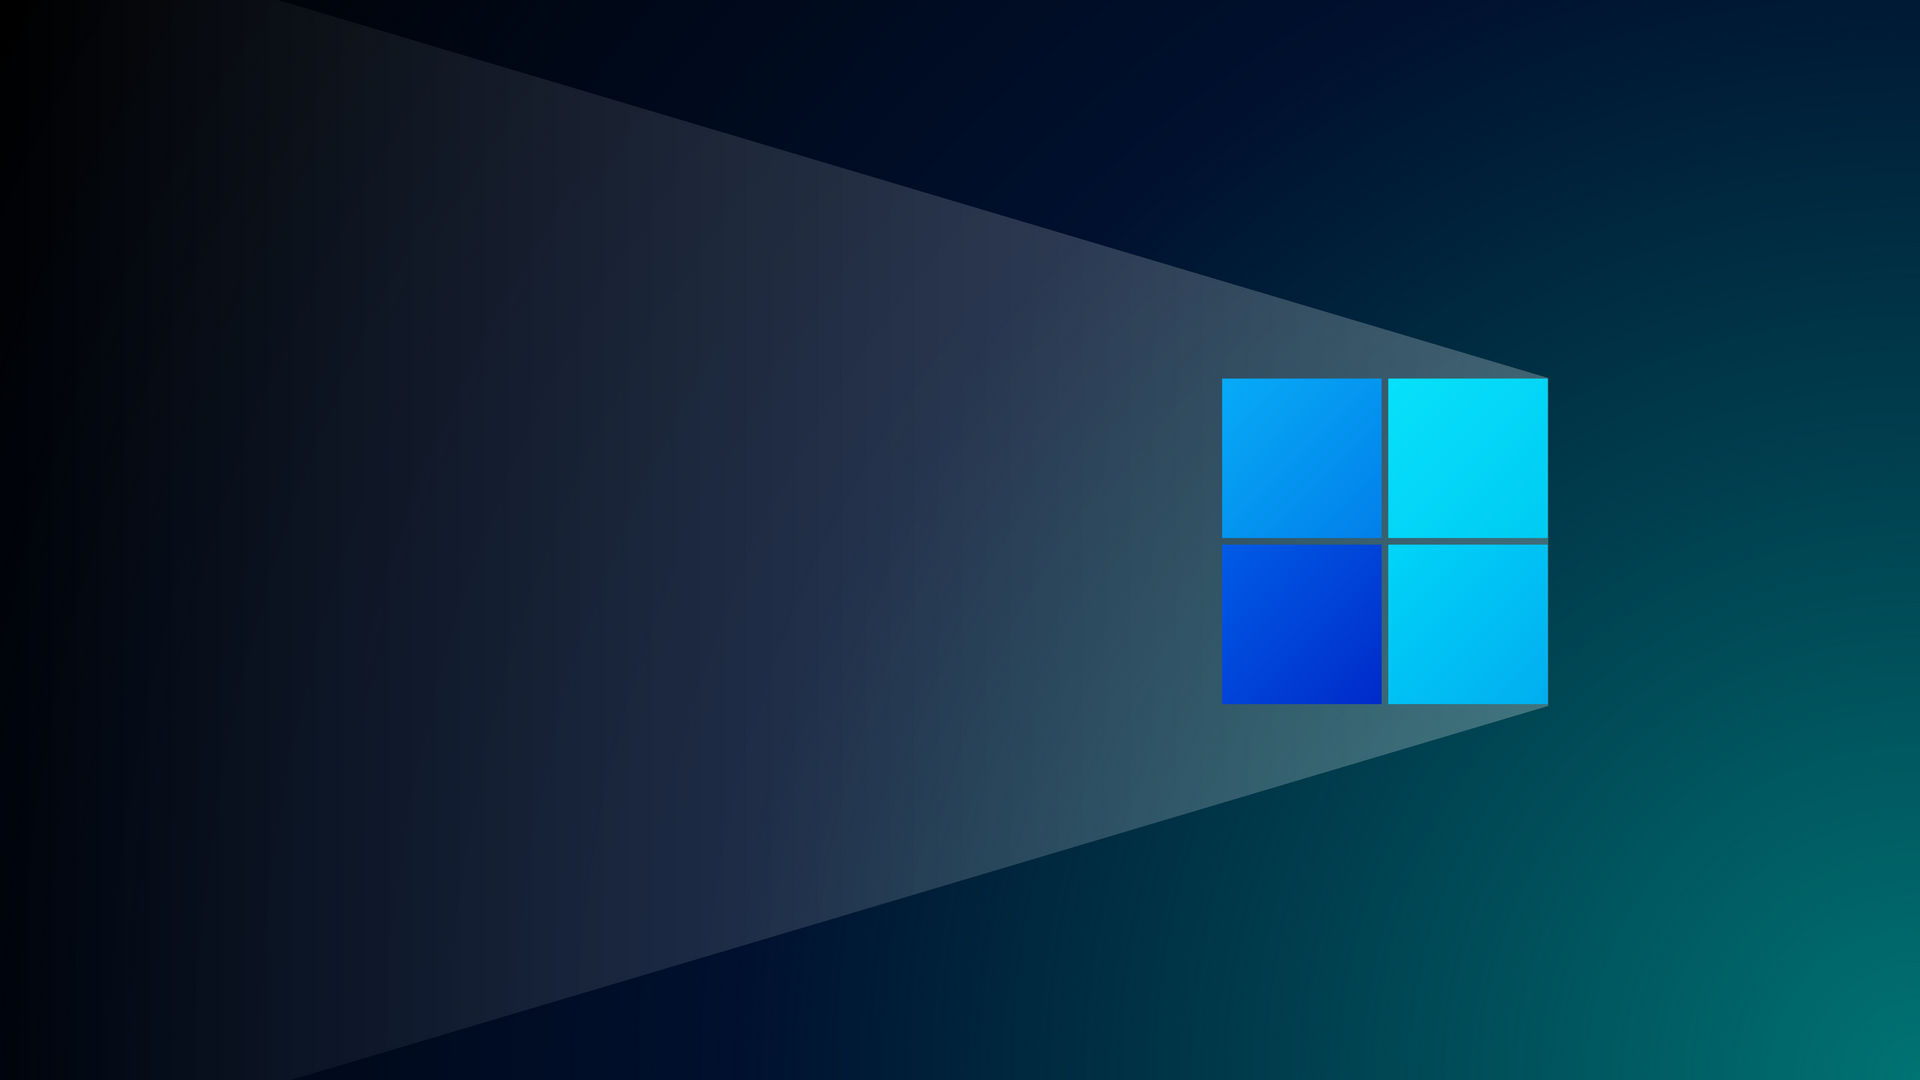 Windows 11 Wallpaper Dark Mode by VyaCHACHsel on DeviantArt